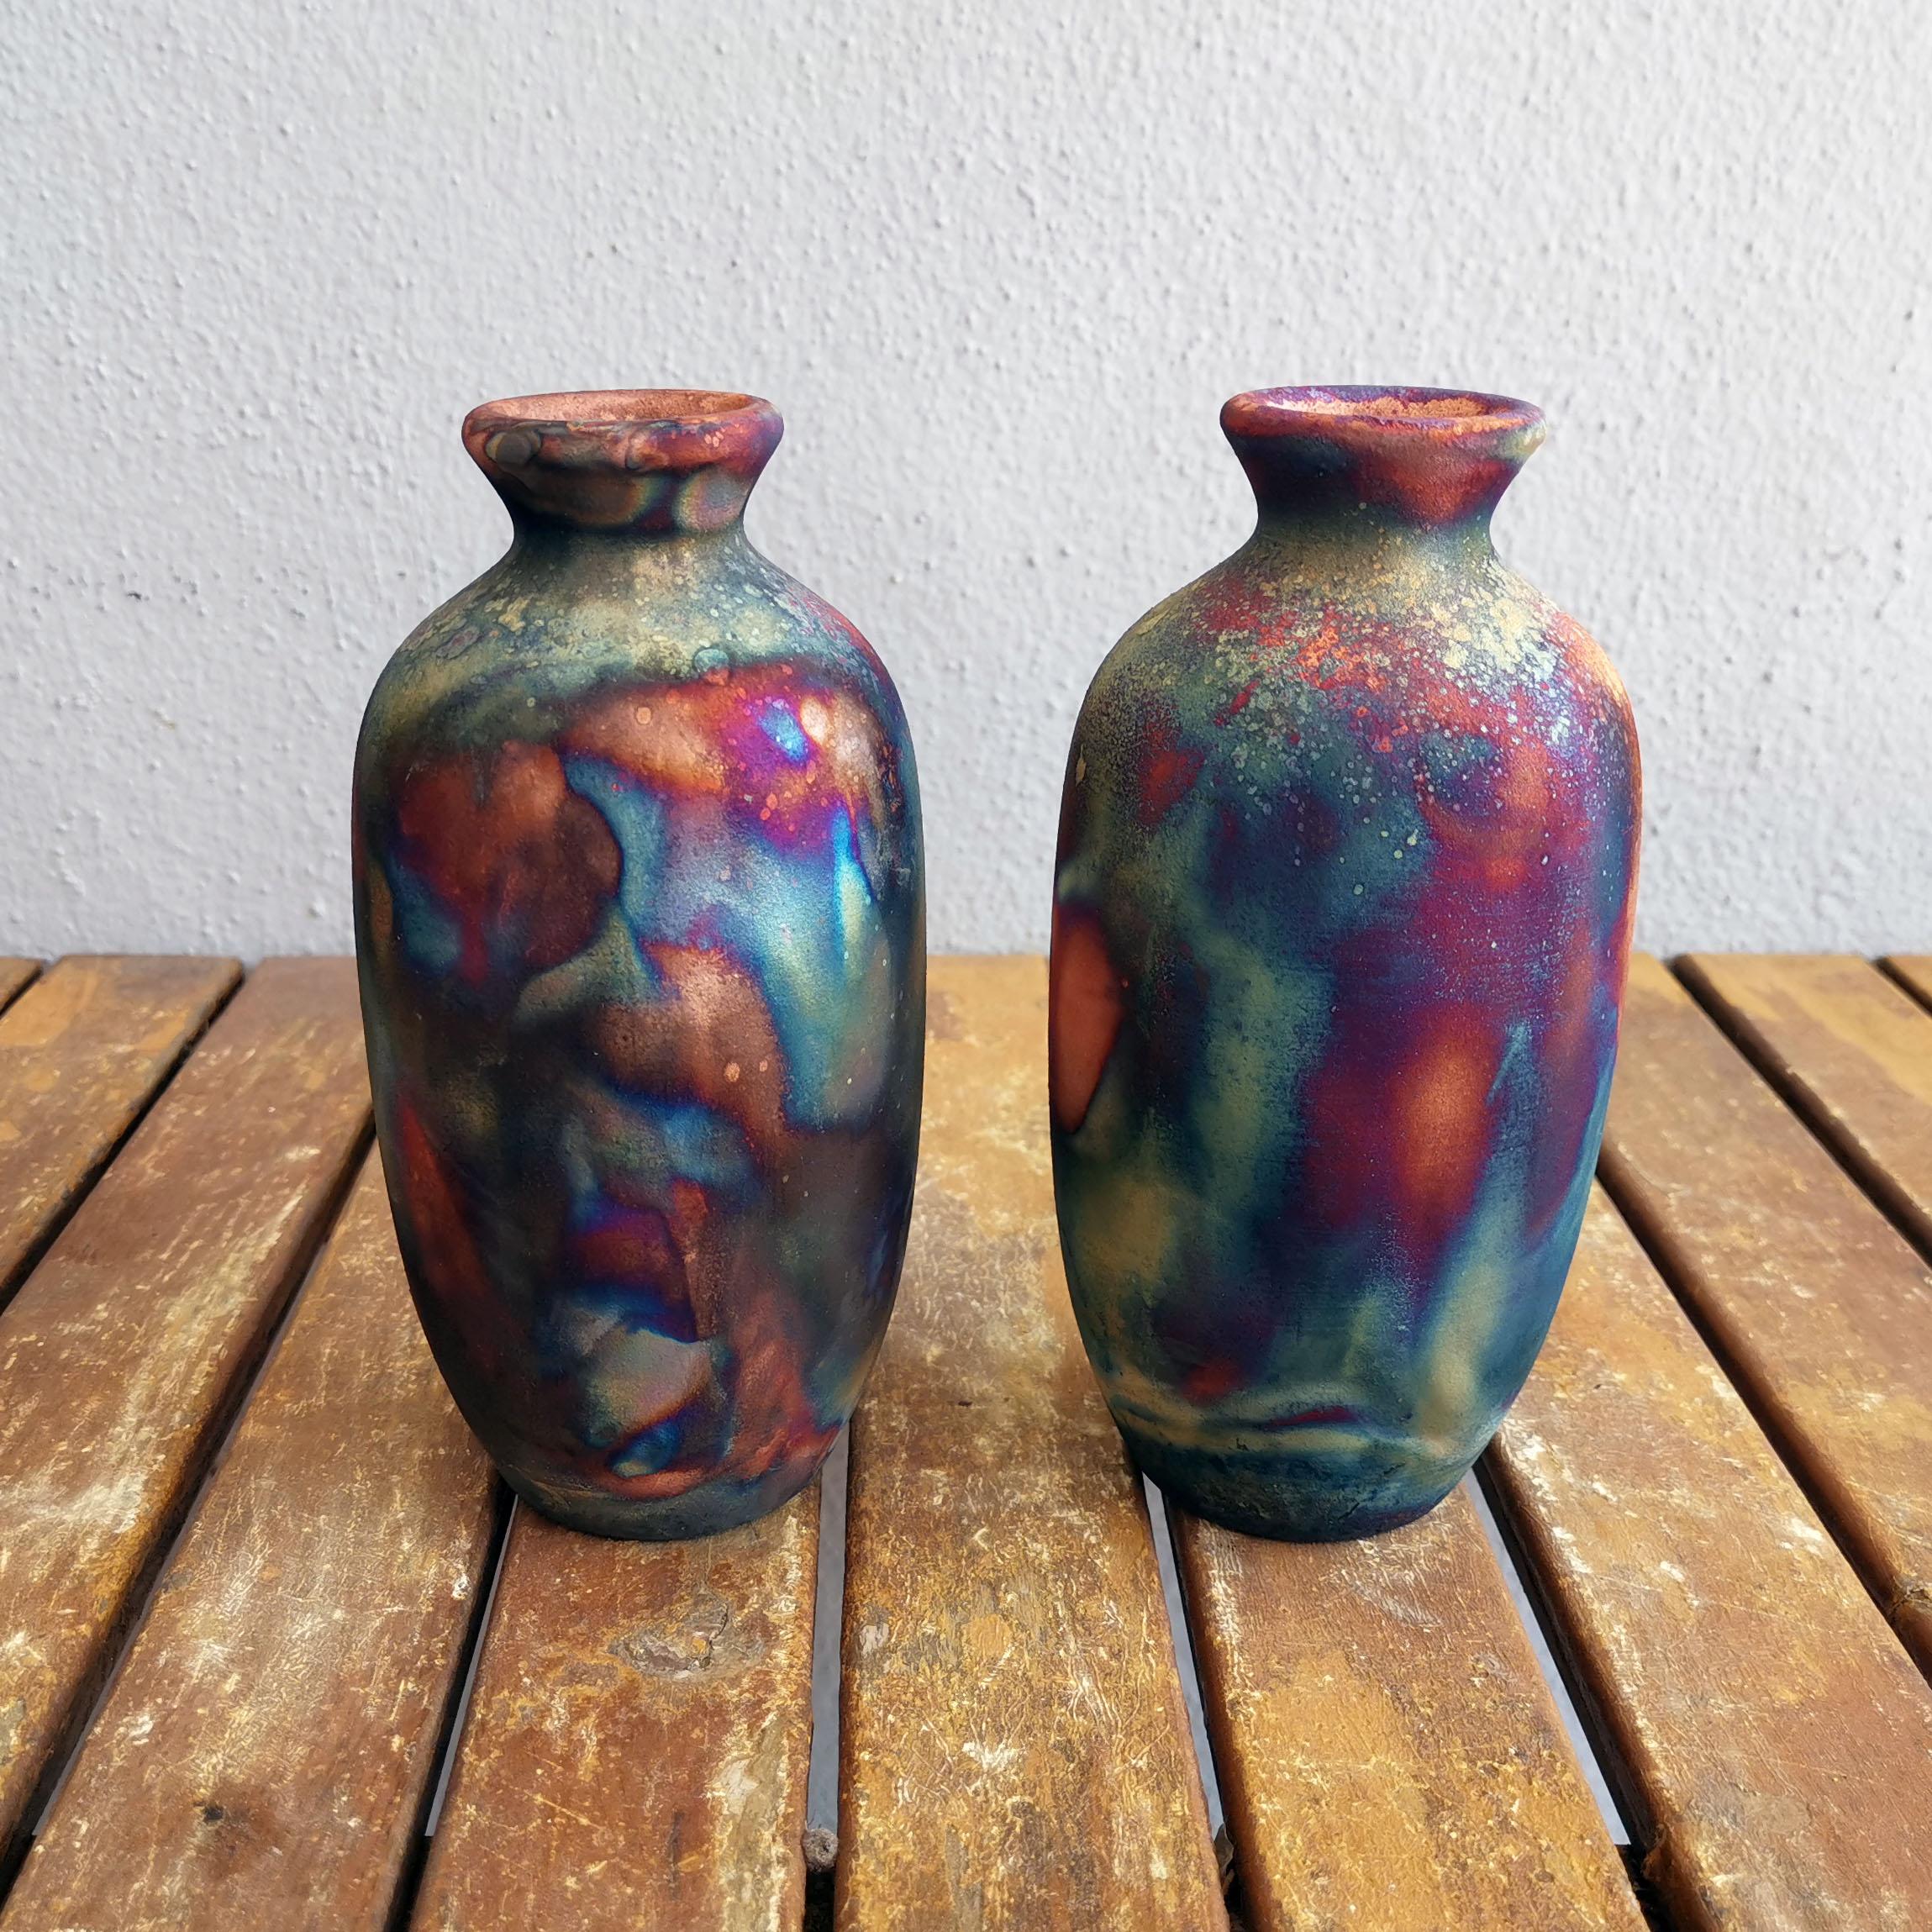 Koban (小判) - (n) ovale

NOUVEAU ET AMÉLIORÉ : Ce vase est livré avec un insert tubulaire étanche pour les fleurs fraîches et les boutures. La largeur de l'insert est de 2cm/0.8 inches.

Vous recevez : 2 unités du vase Koban en finition cuivre